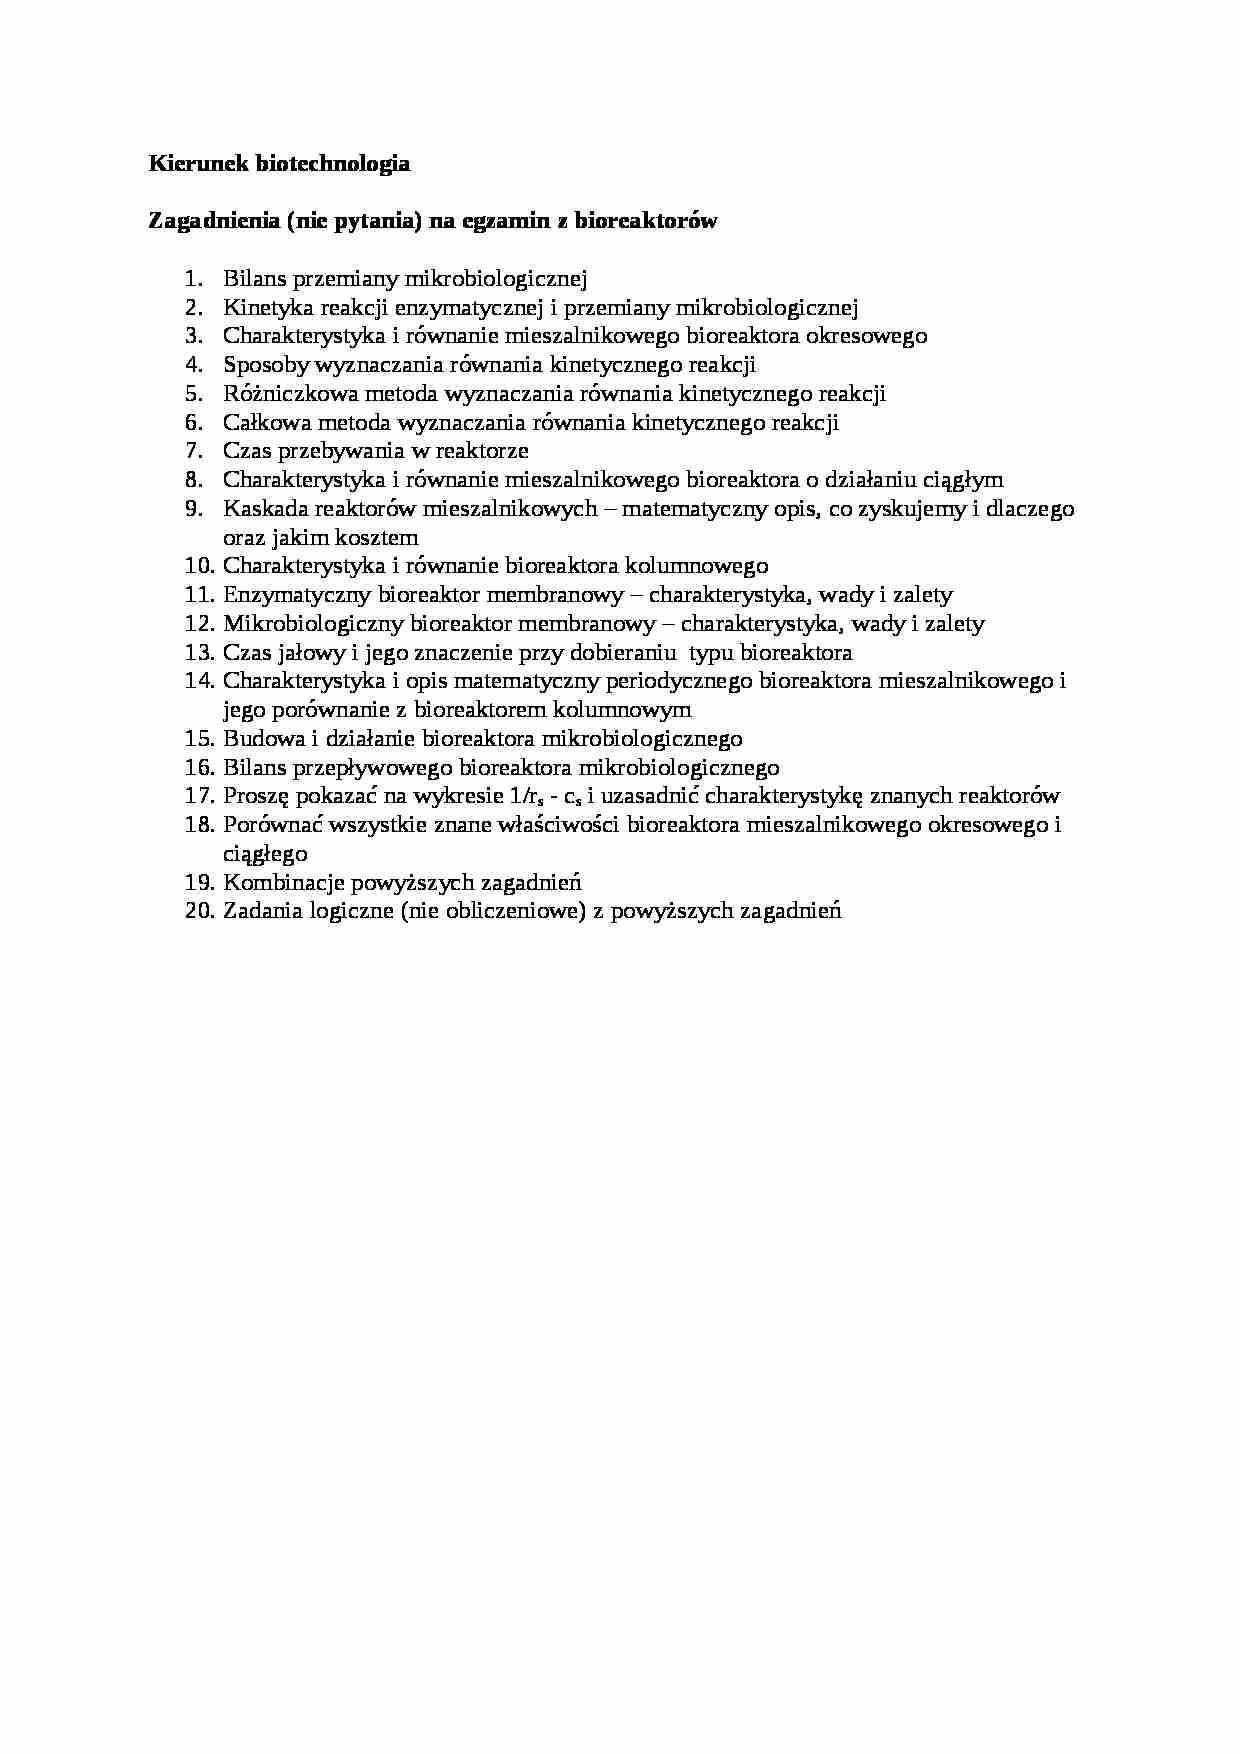 Inżynieria bioreaktorów- zagadnienia na egzamin - strona 1